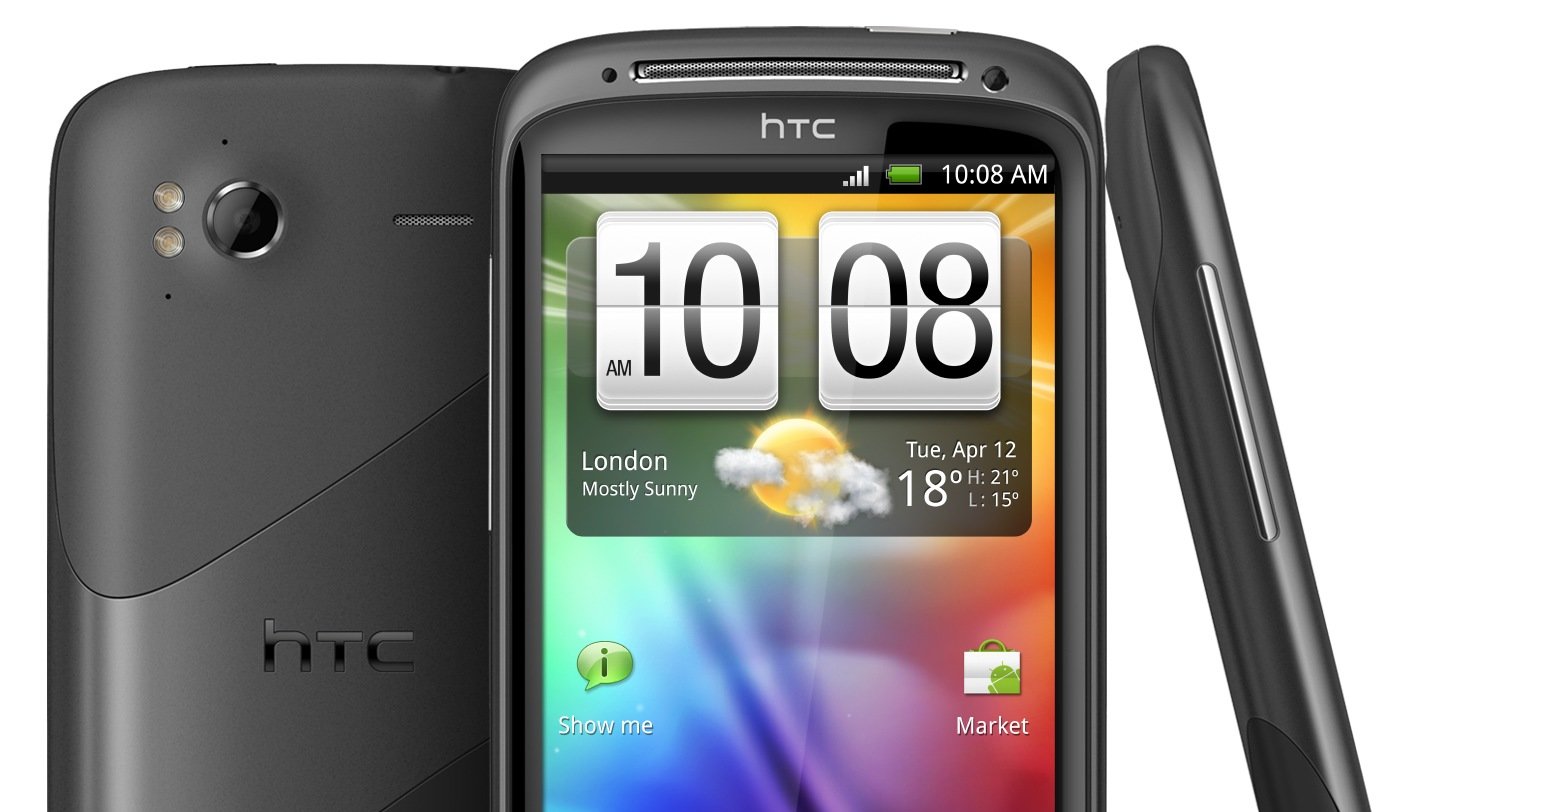 Patentselskapet IPCom prøver å få stoppet salget av HTC-telefoner i Tyskland.